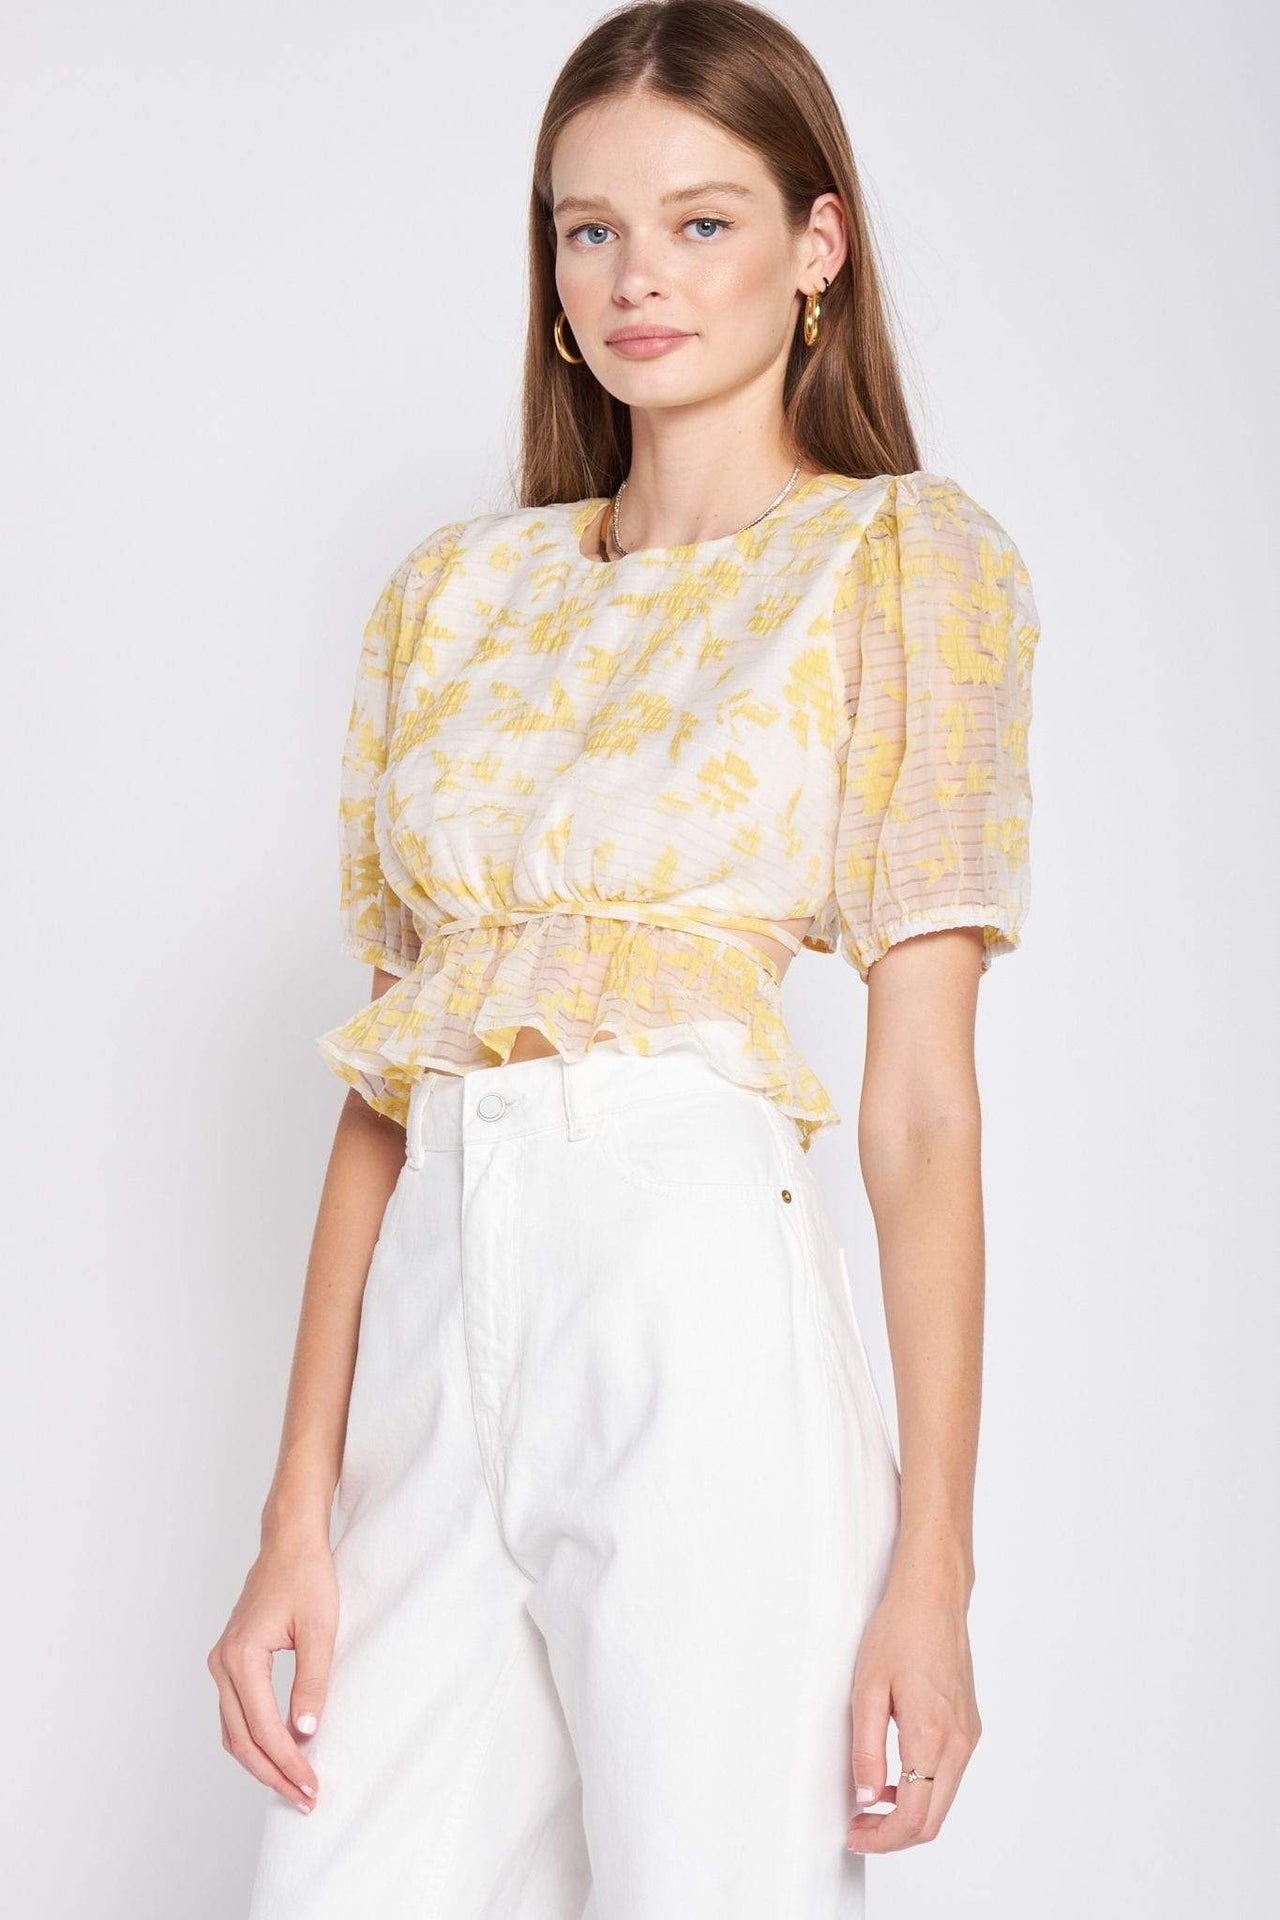 Audrey Top Yellow, Short Blouse by En Saison | LIT Boutique